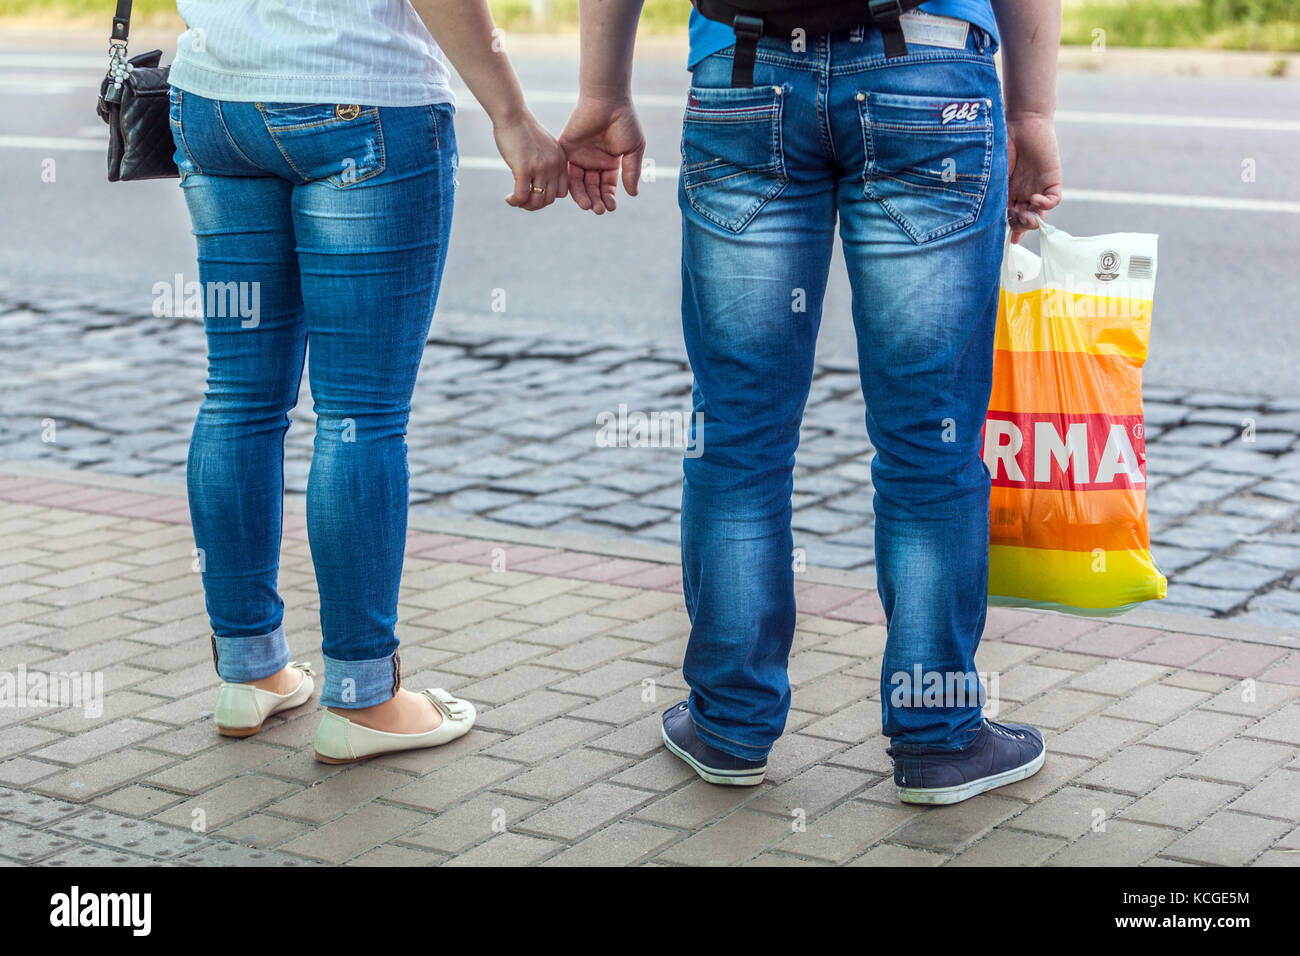 Les gens tenant les mains couple vue arrière, un homme tenant un sac en plastique, Jeans Street style femme homme jeans Banque D'Images